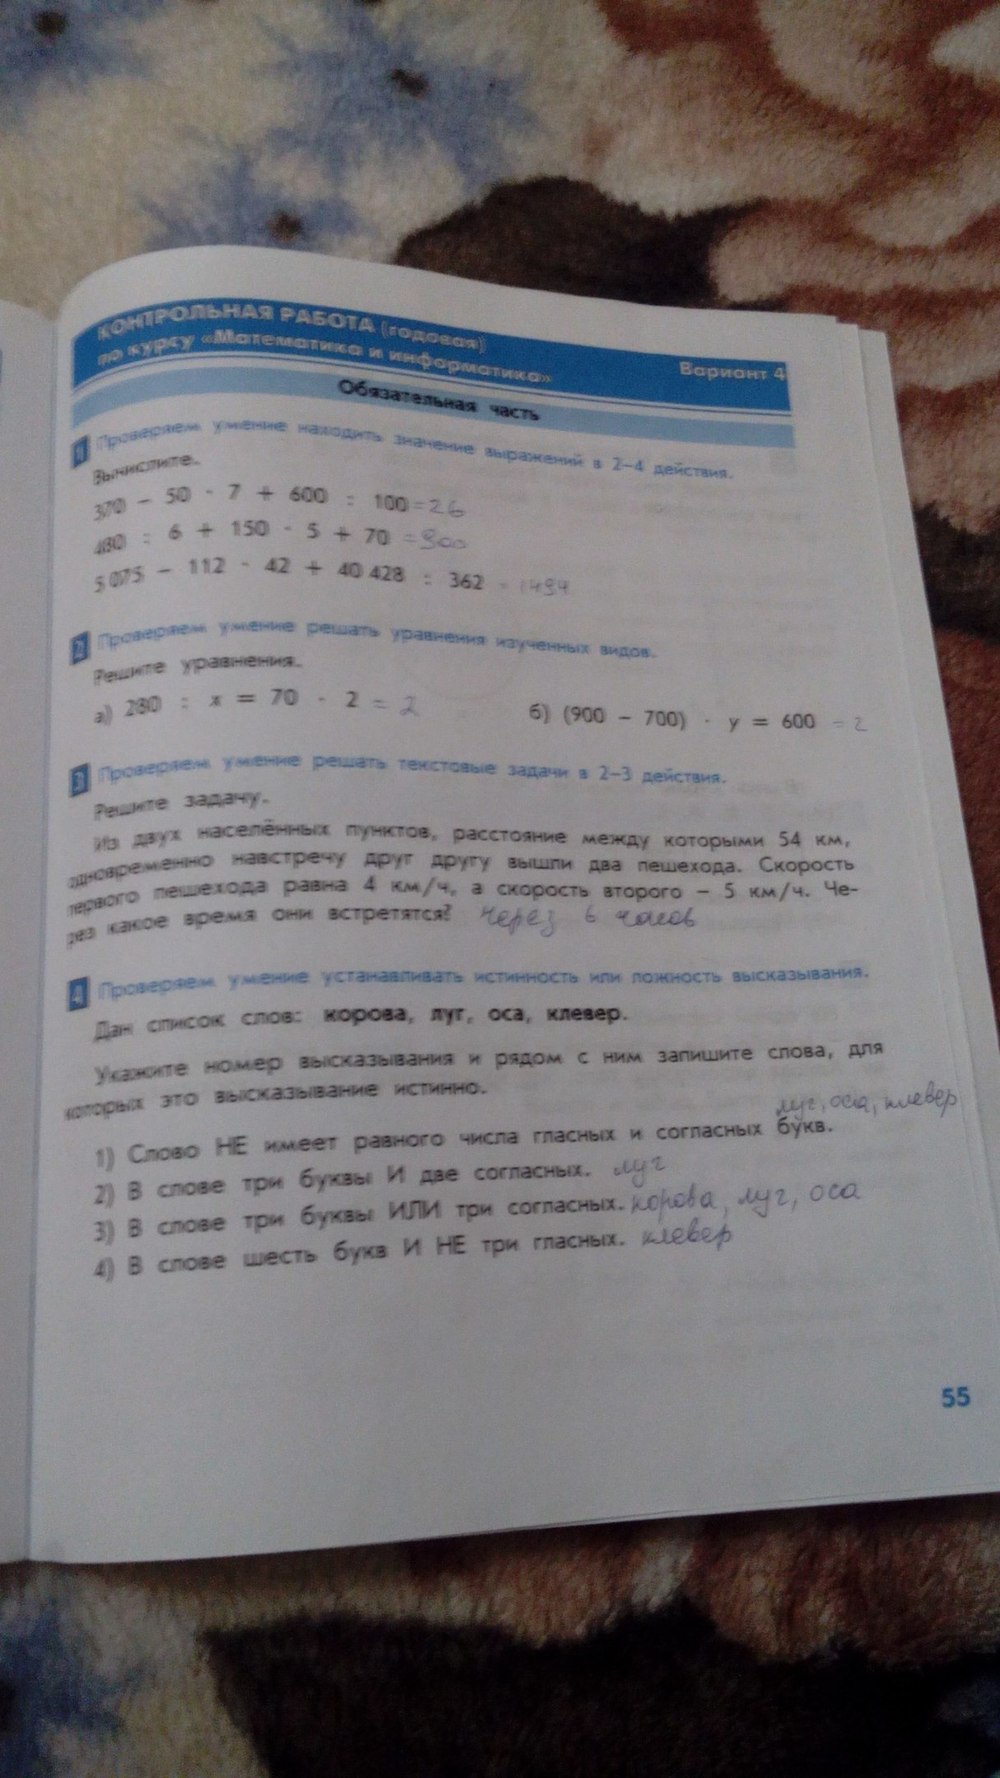 гдз 4 класс тесты и контрольные работы страница 55 математика Козлова, Рубин